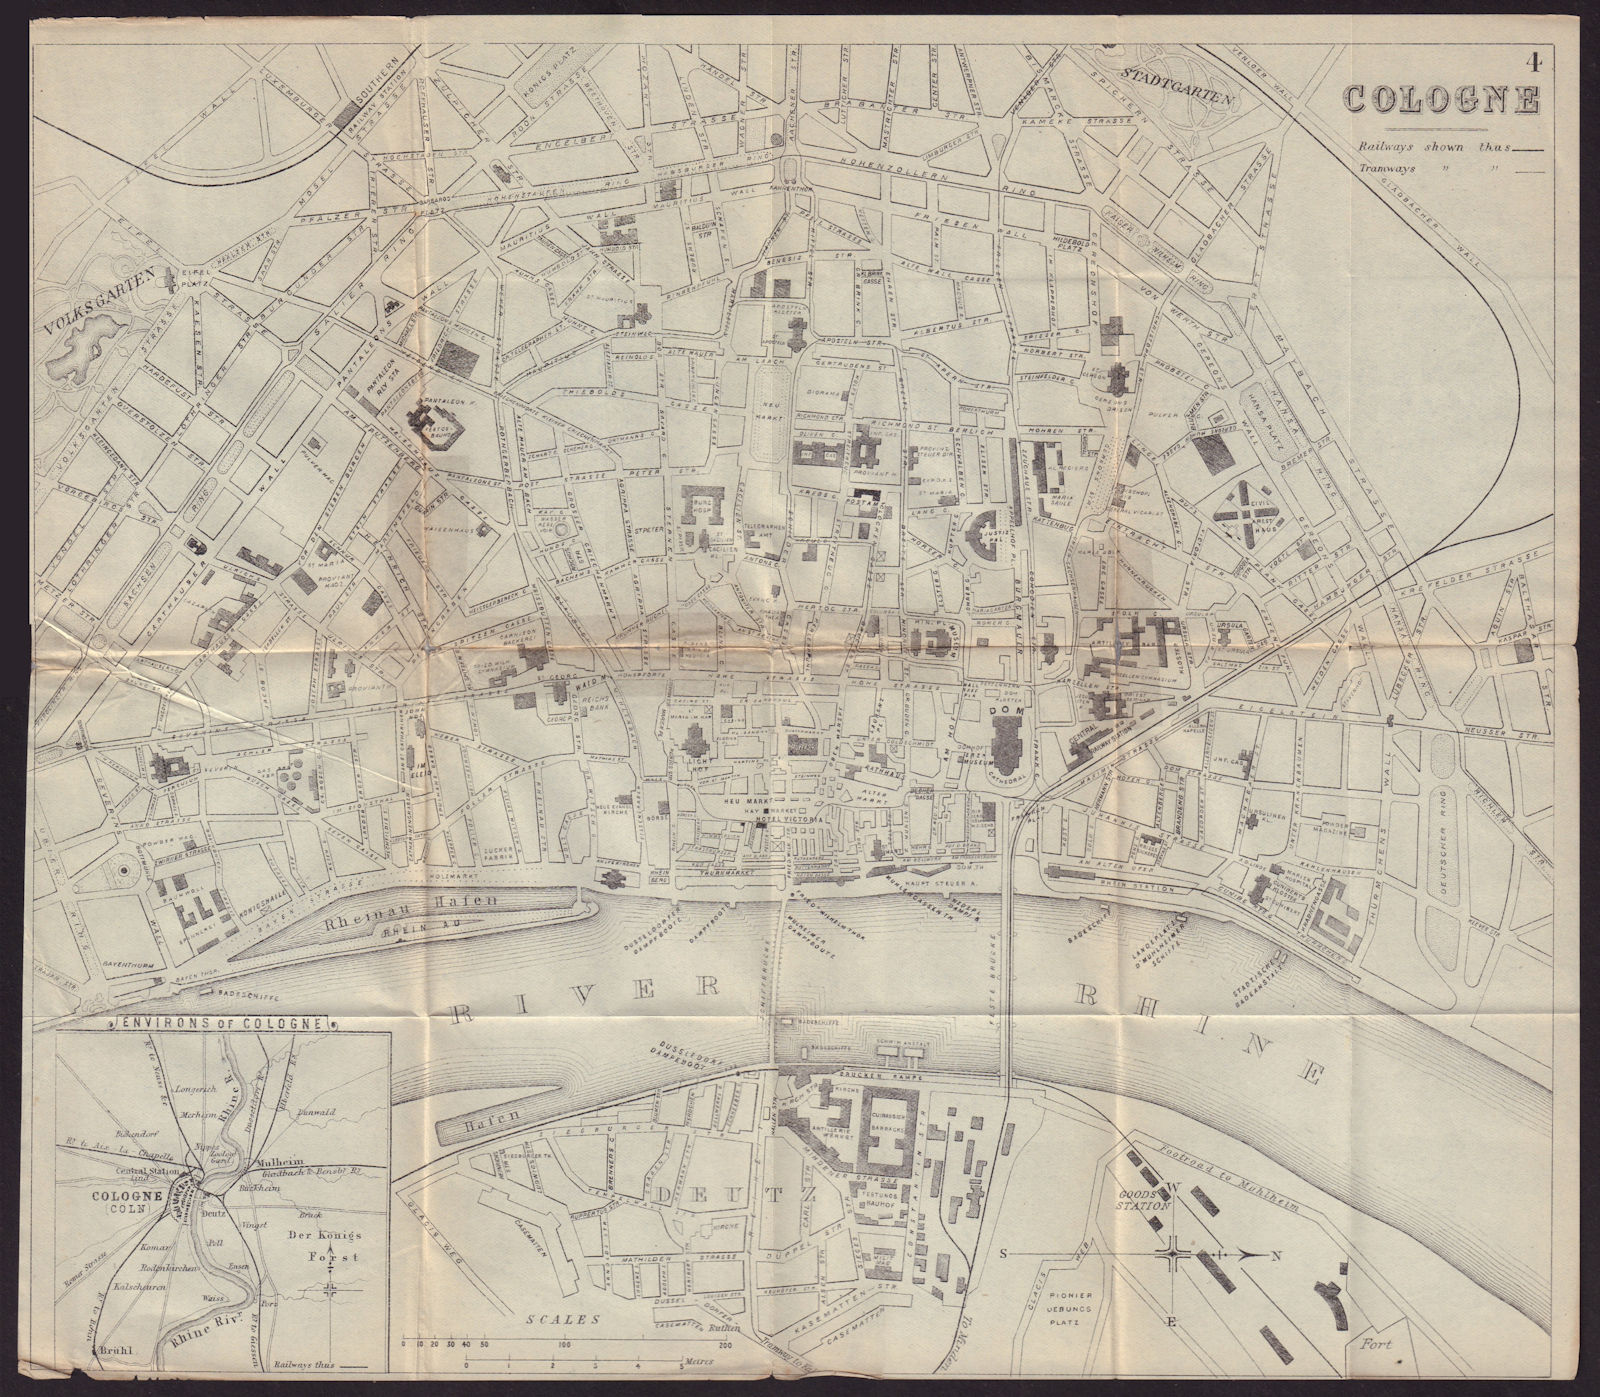 COLOGNE KOLN KÖLN antique town plan city map. Germany. BRADSHAW c1898 old